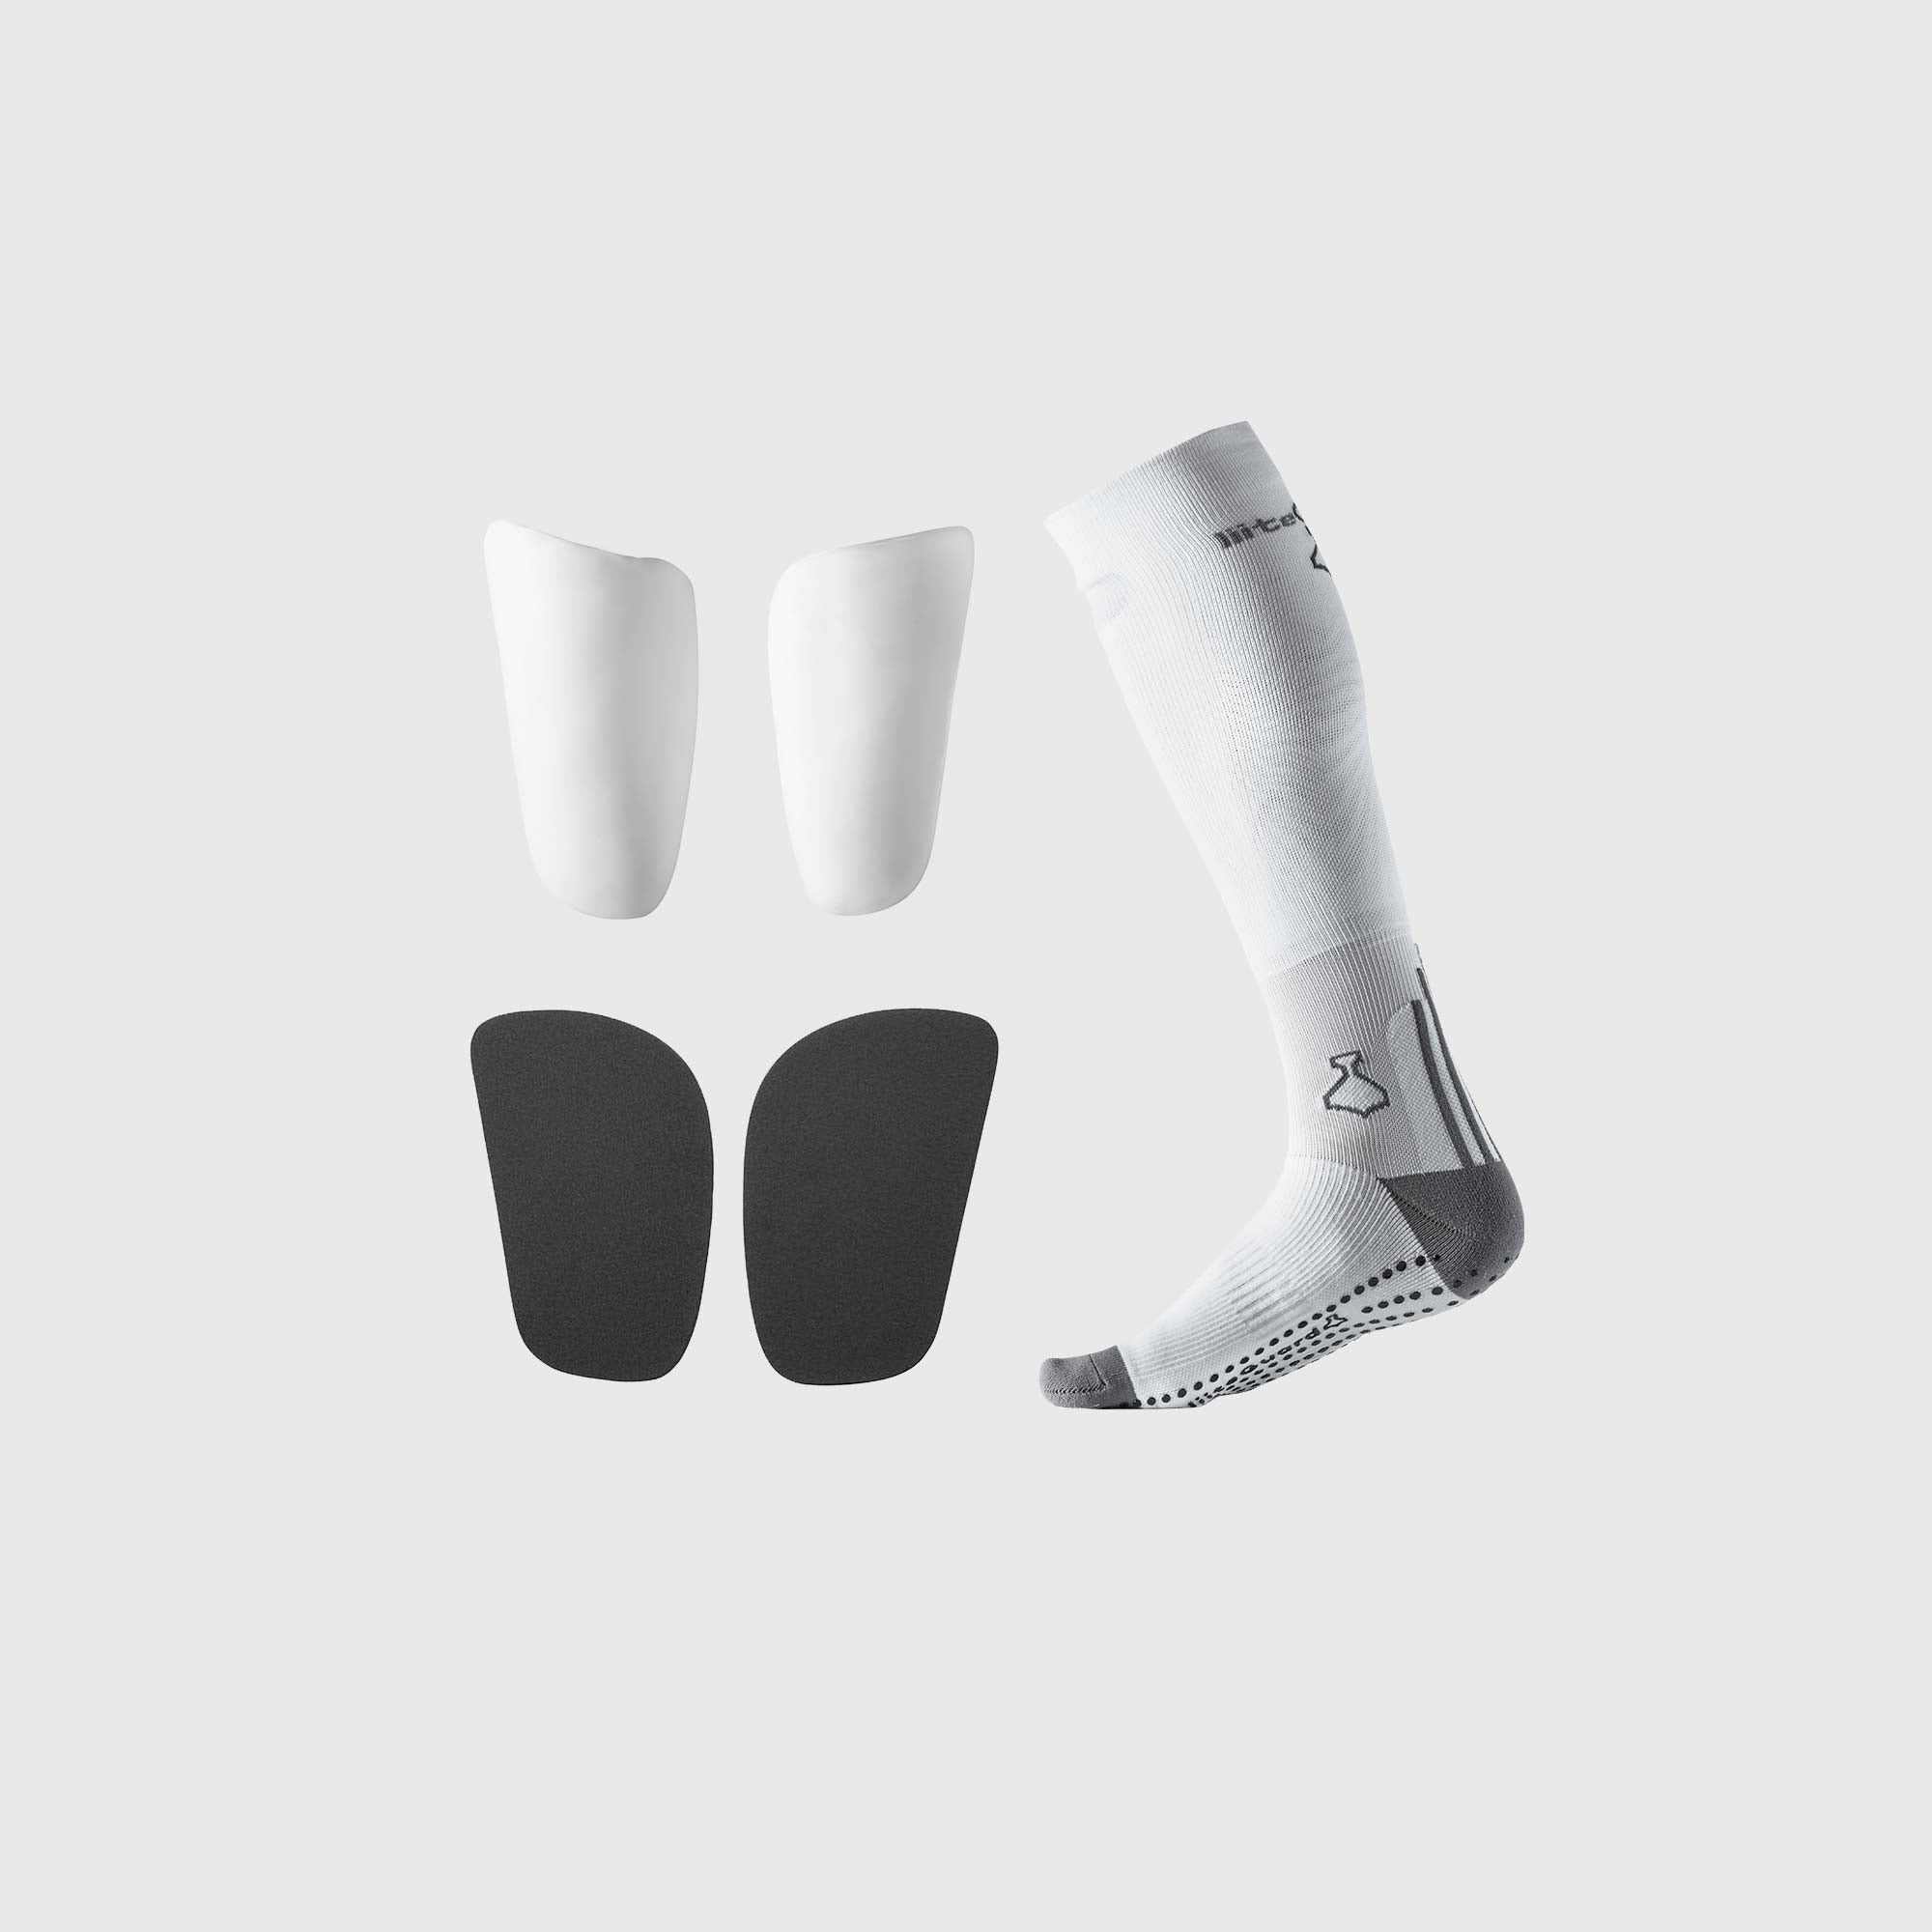 Liiteguard PERFORMANCE KIT Long socks WHITE